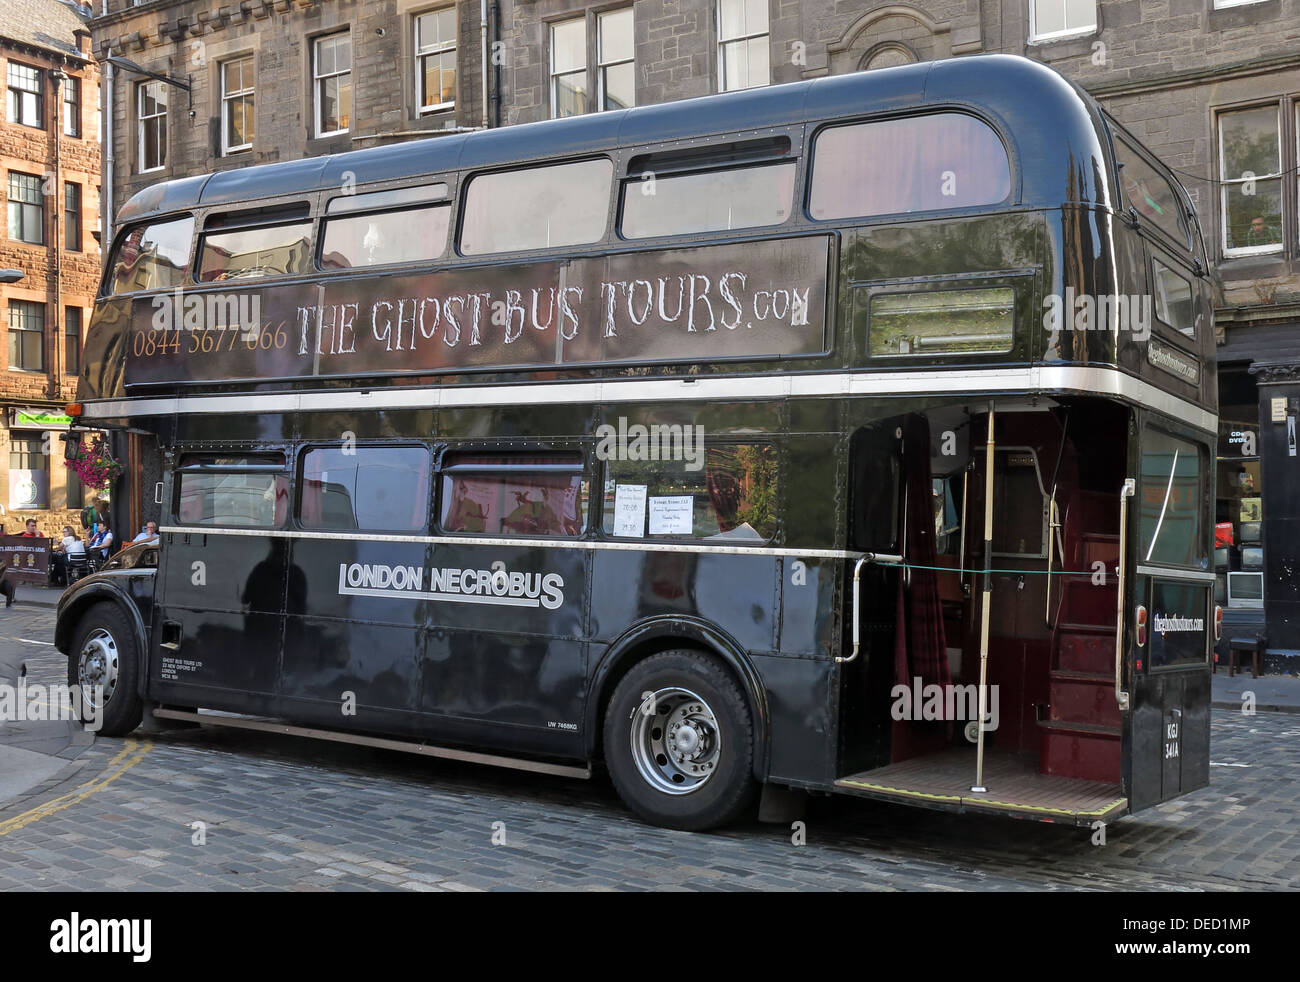 The Black London Necrobus, hanté Ghost bus tours, dans la vieille ville d'Édimbourg, Écosse, Royaume-Uni, EH1 Banque D'Images